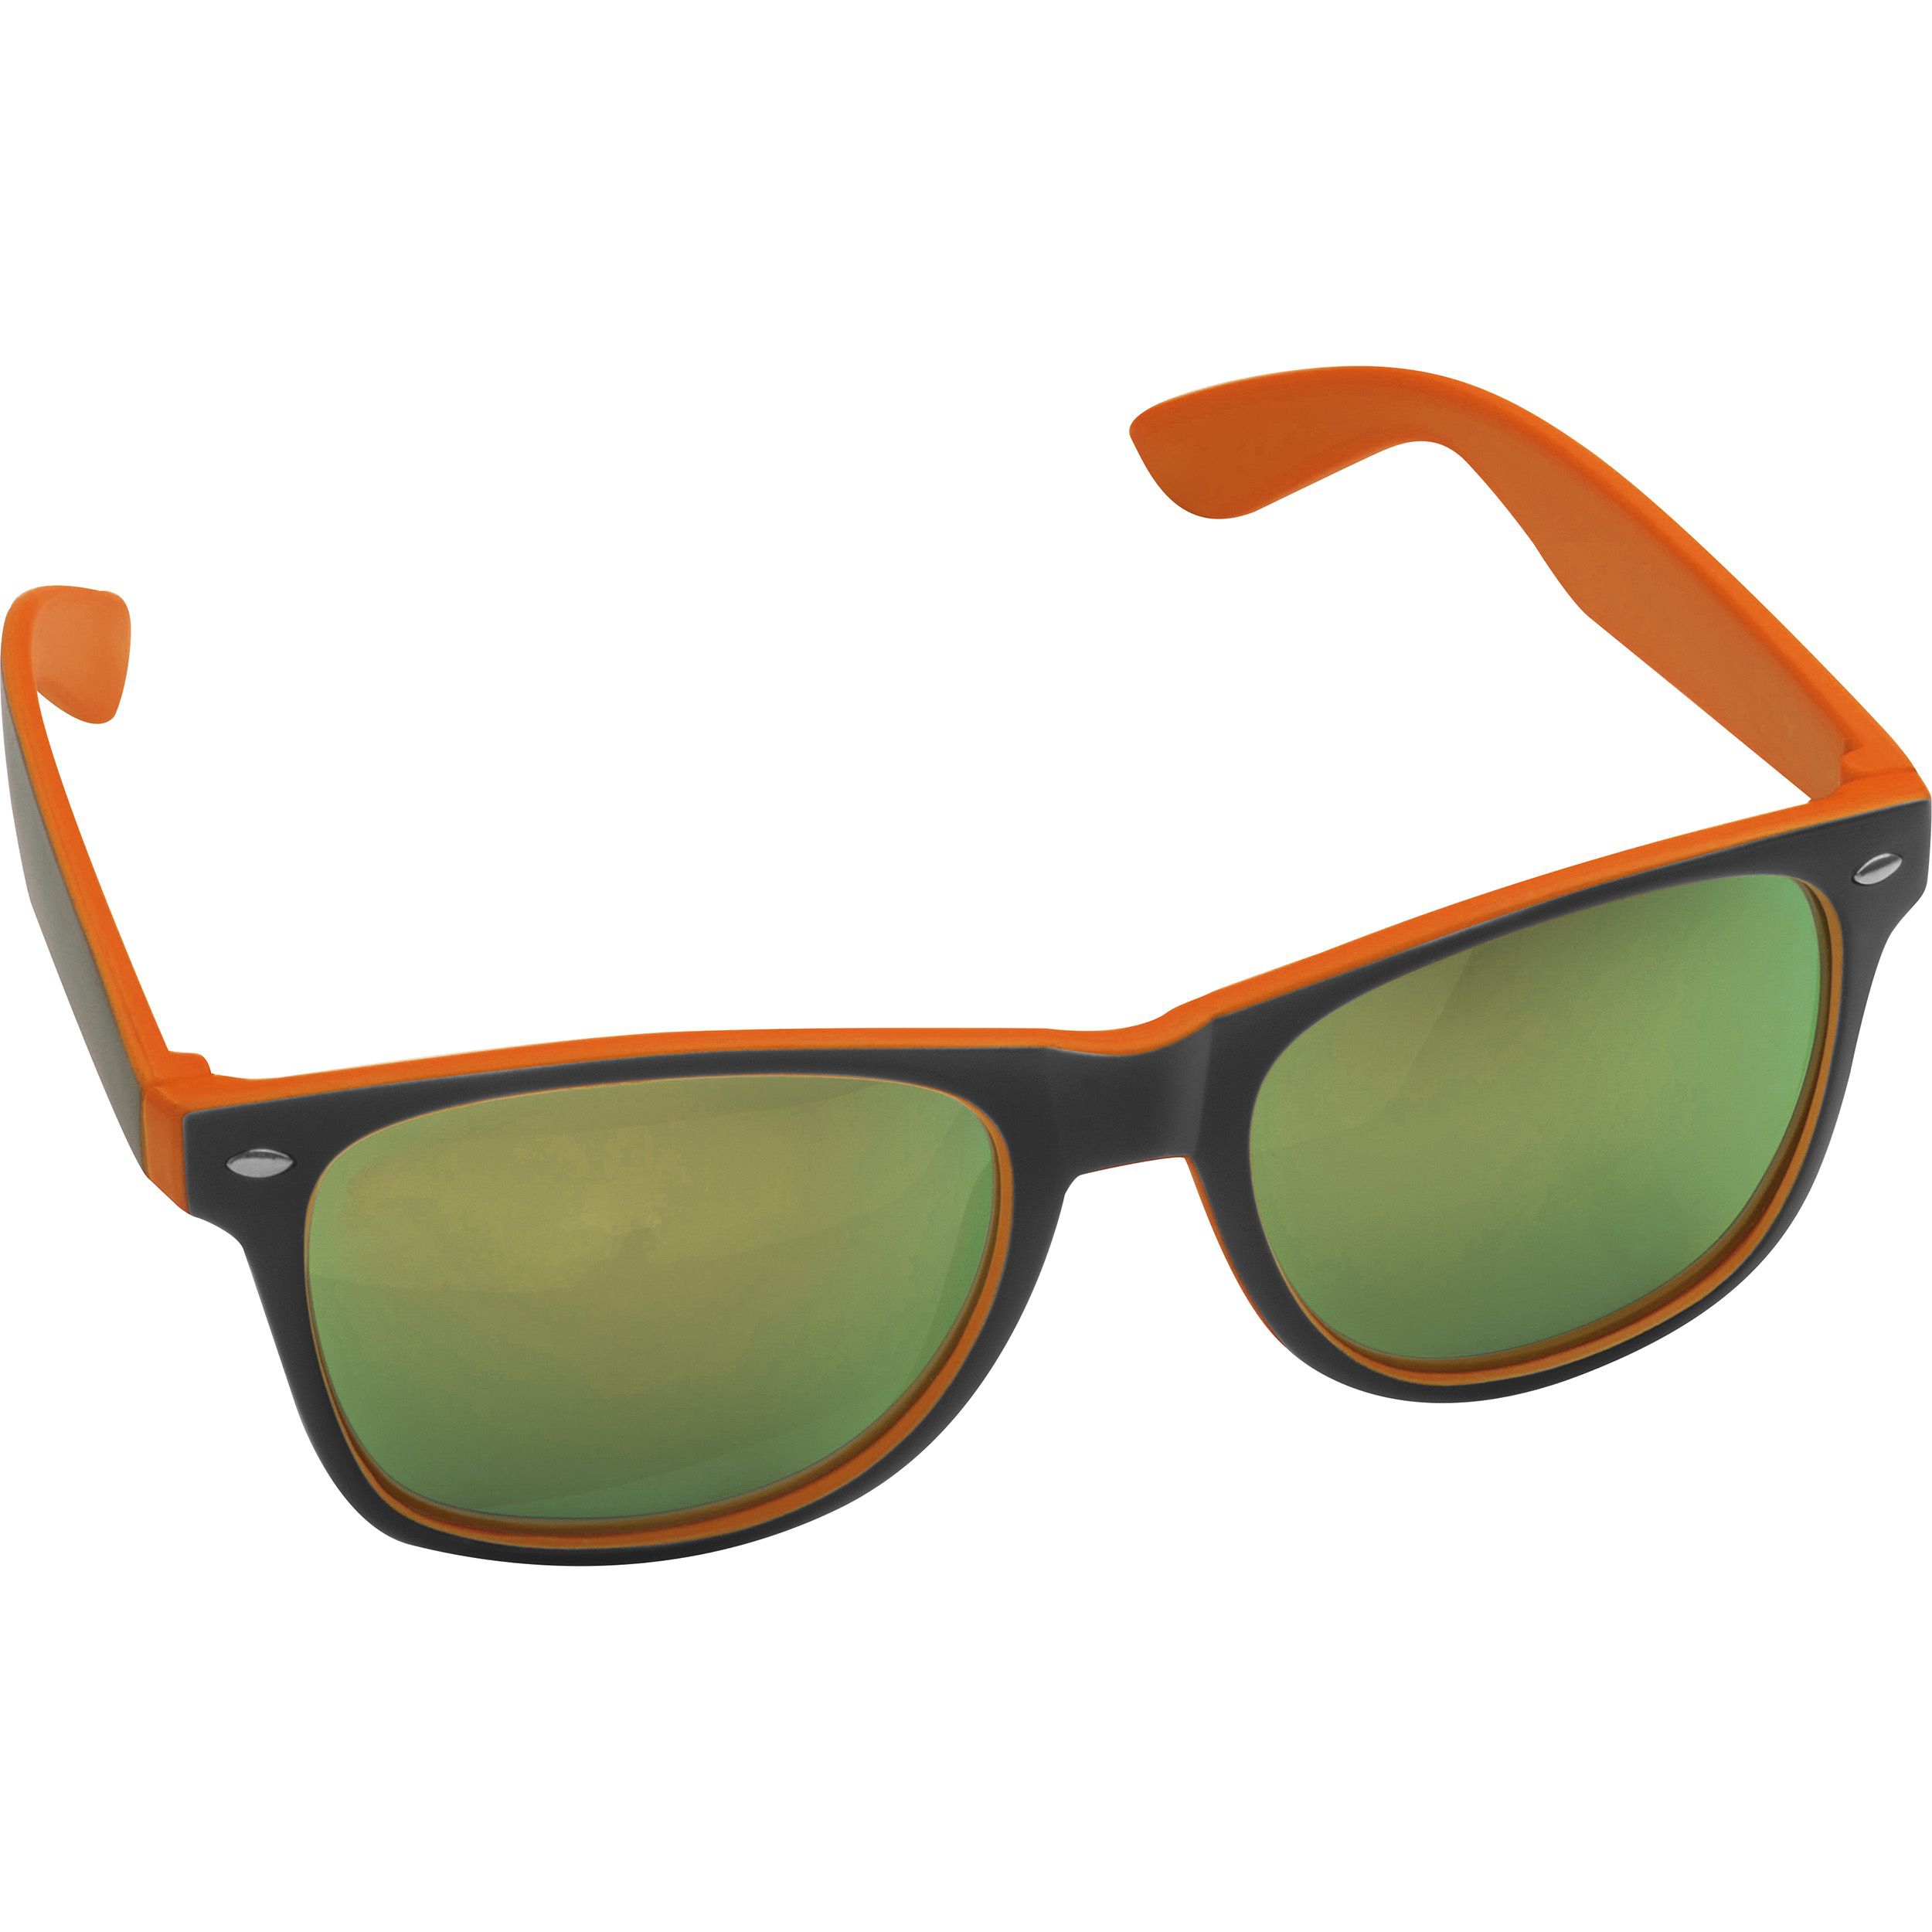 Sonnenbrille aus Kunststoff mit verspiegelten Gläsern, UV 400 Schutz, orange